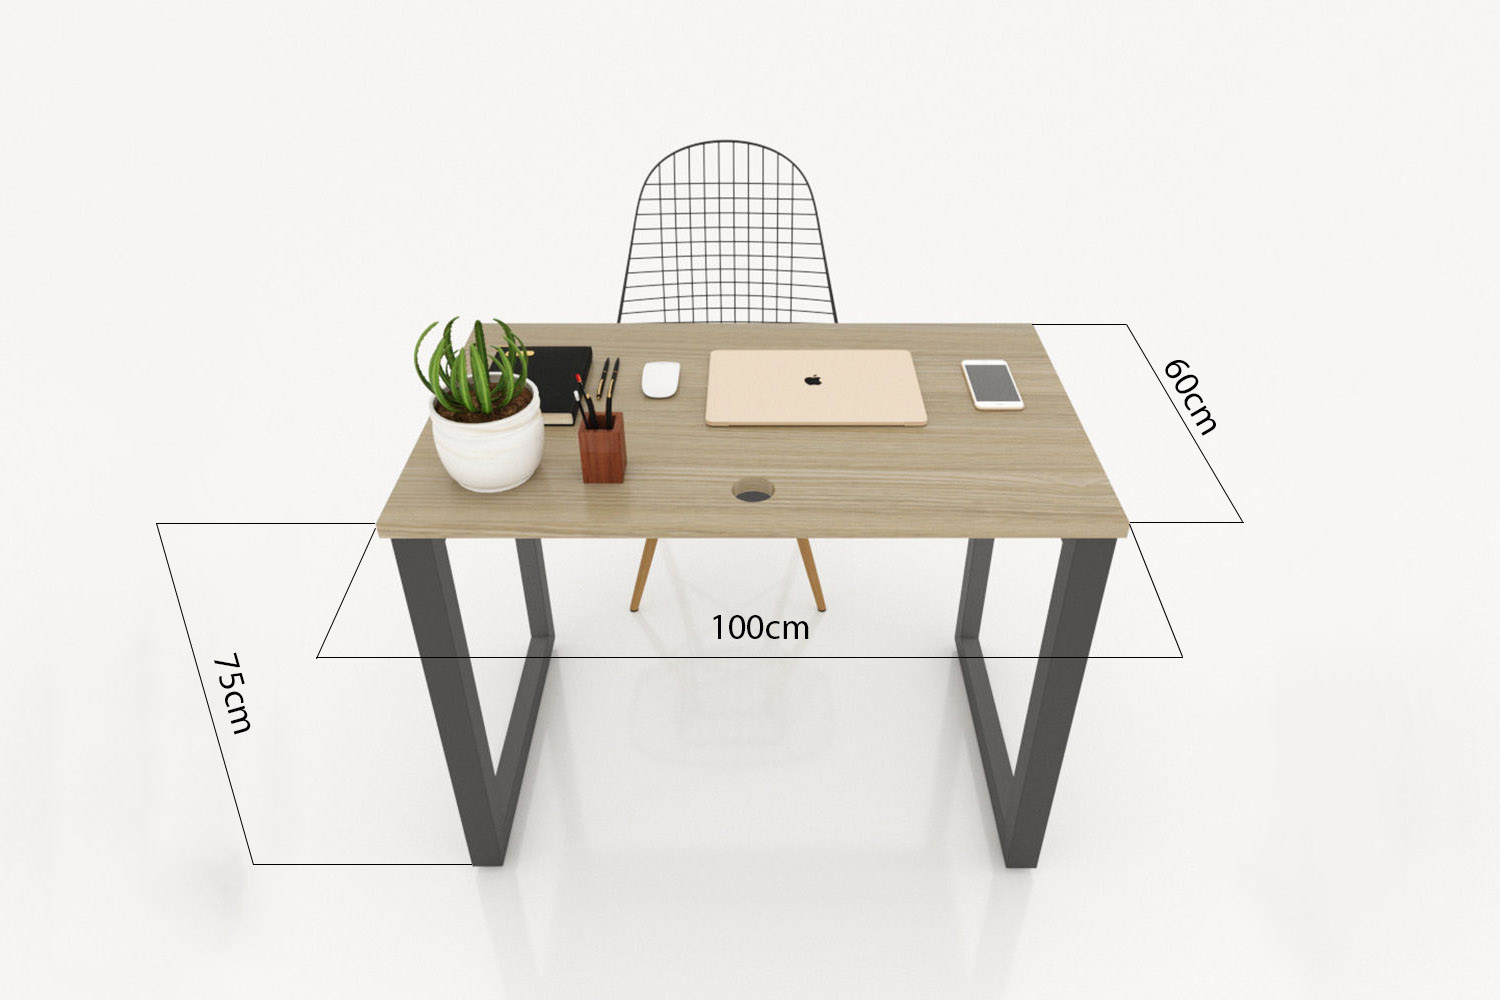 Vóc dáng ảnh hưởng đến kích thước bàn làm việc